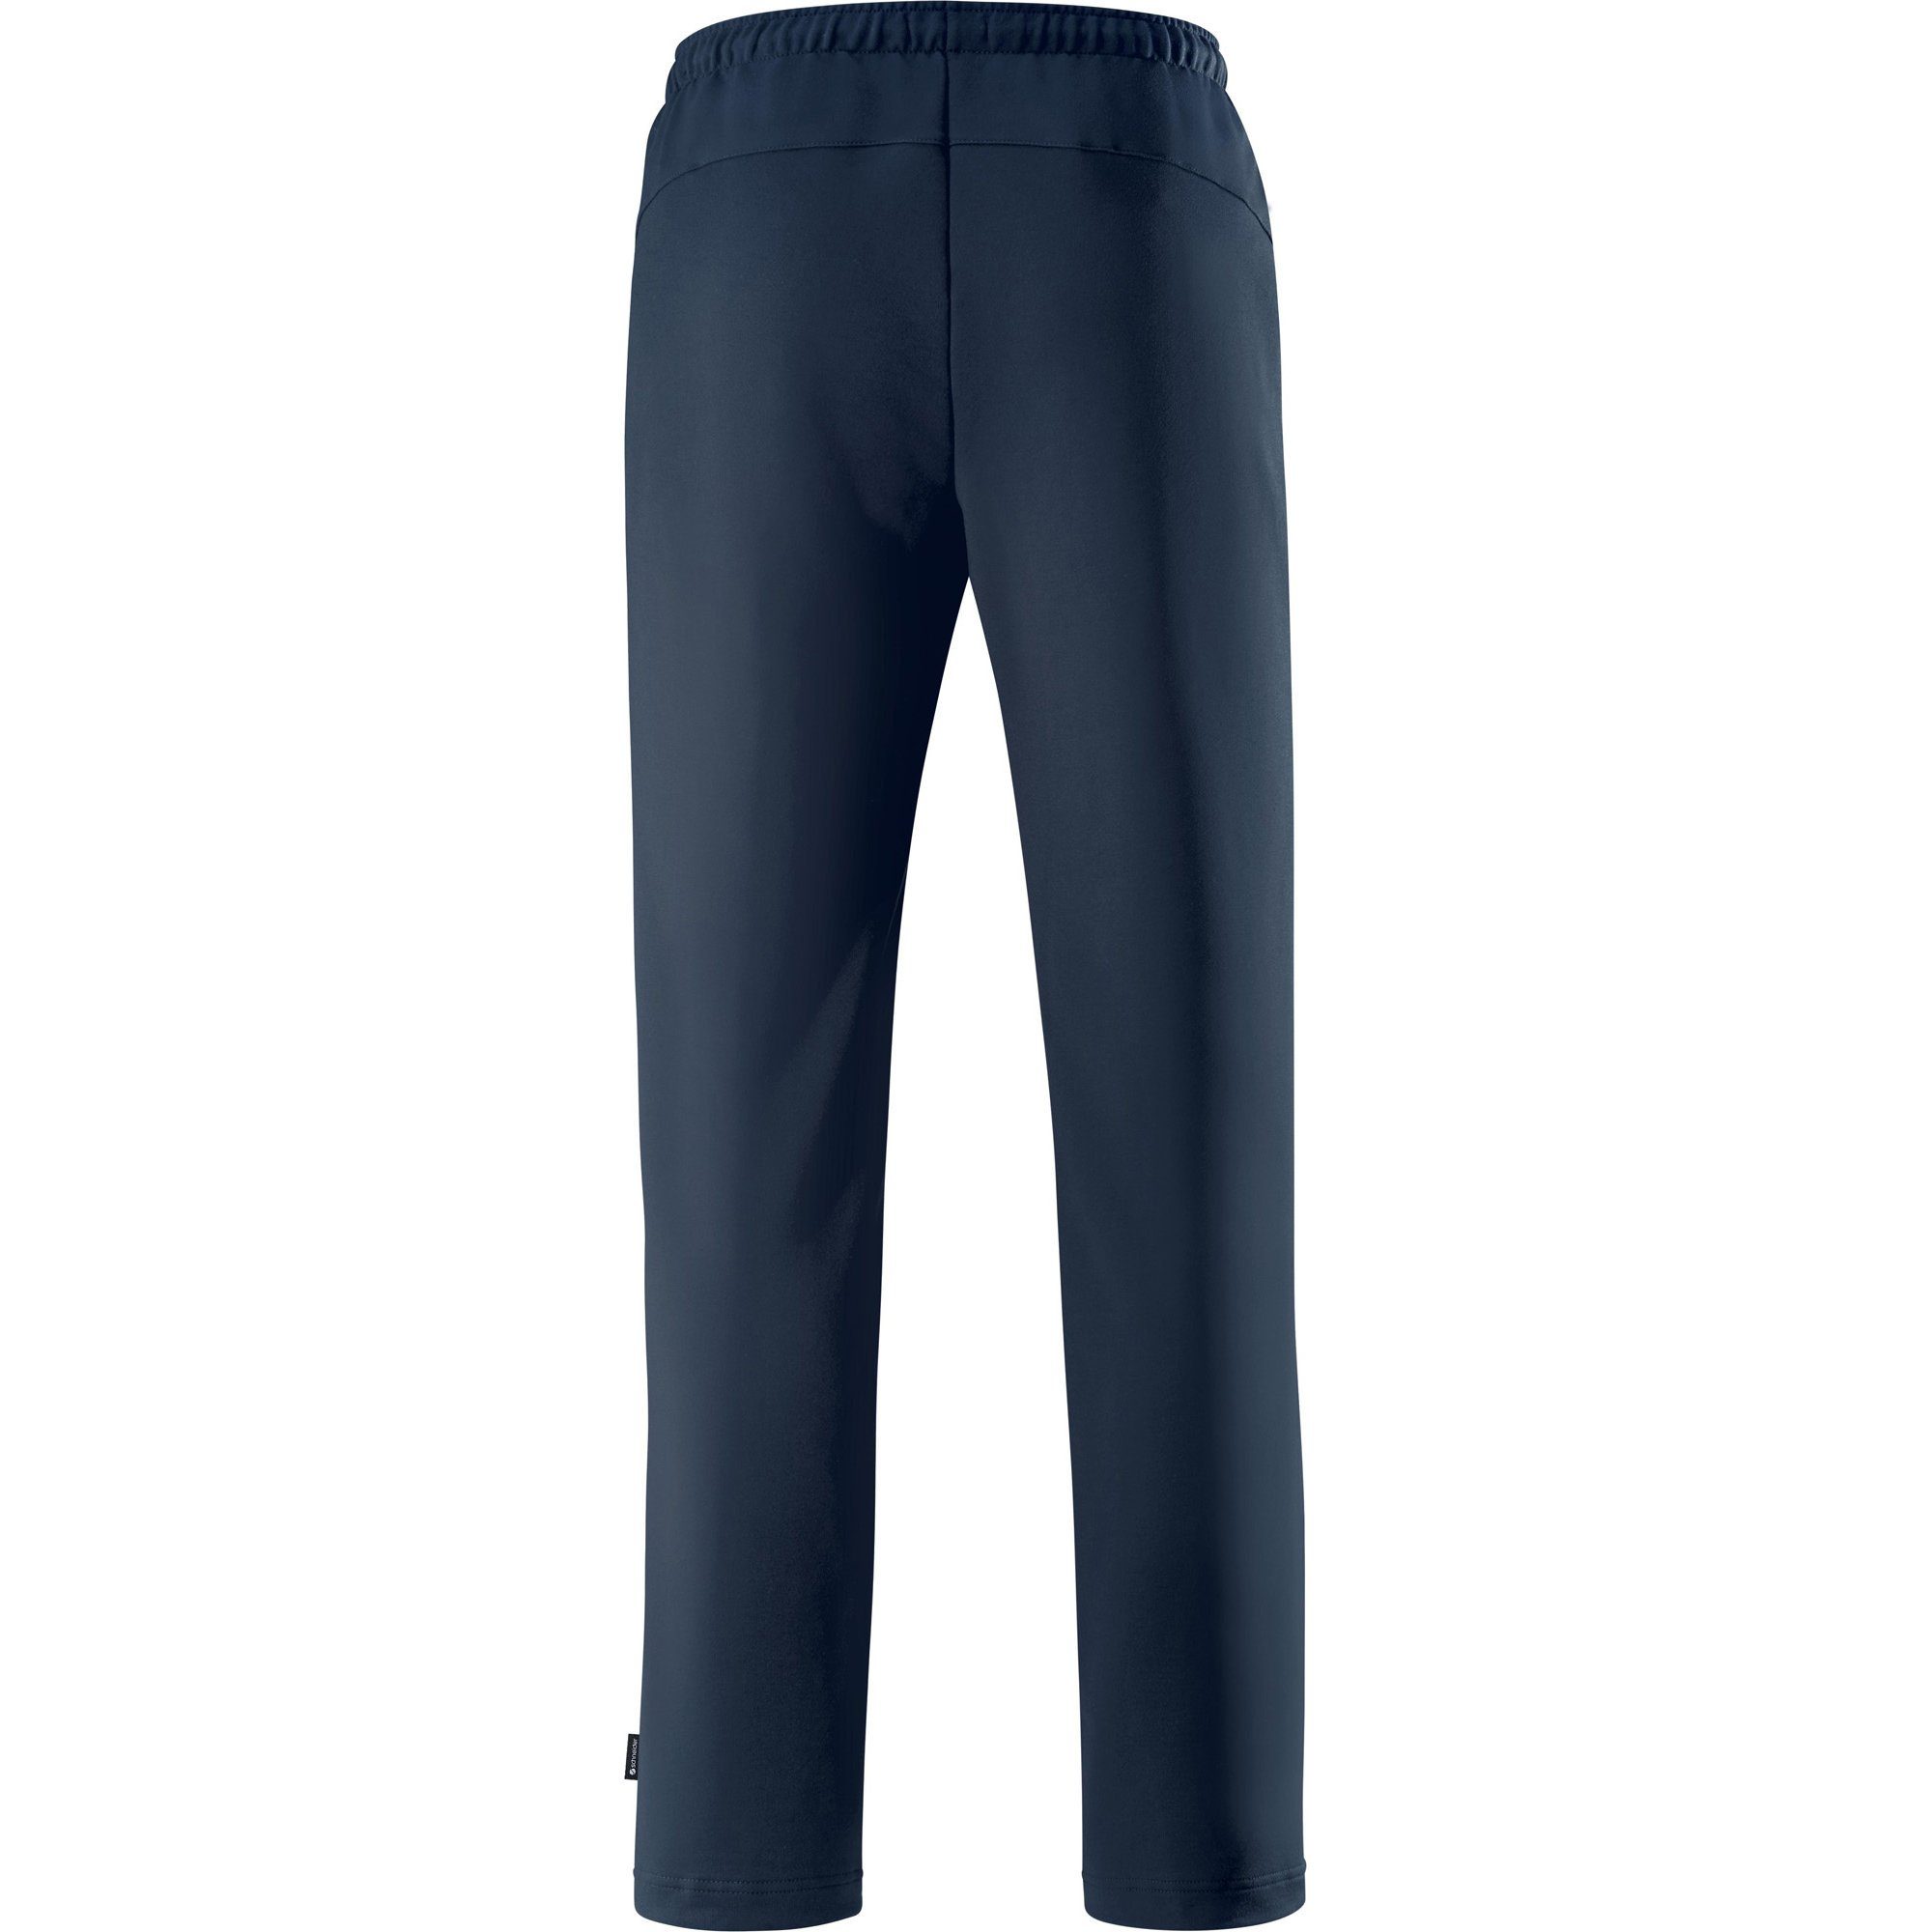 SCHNEIDER Sportswear Uni Jogginghose "HORGENM", lang Herren-Freizeithose dunkelblau